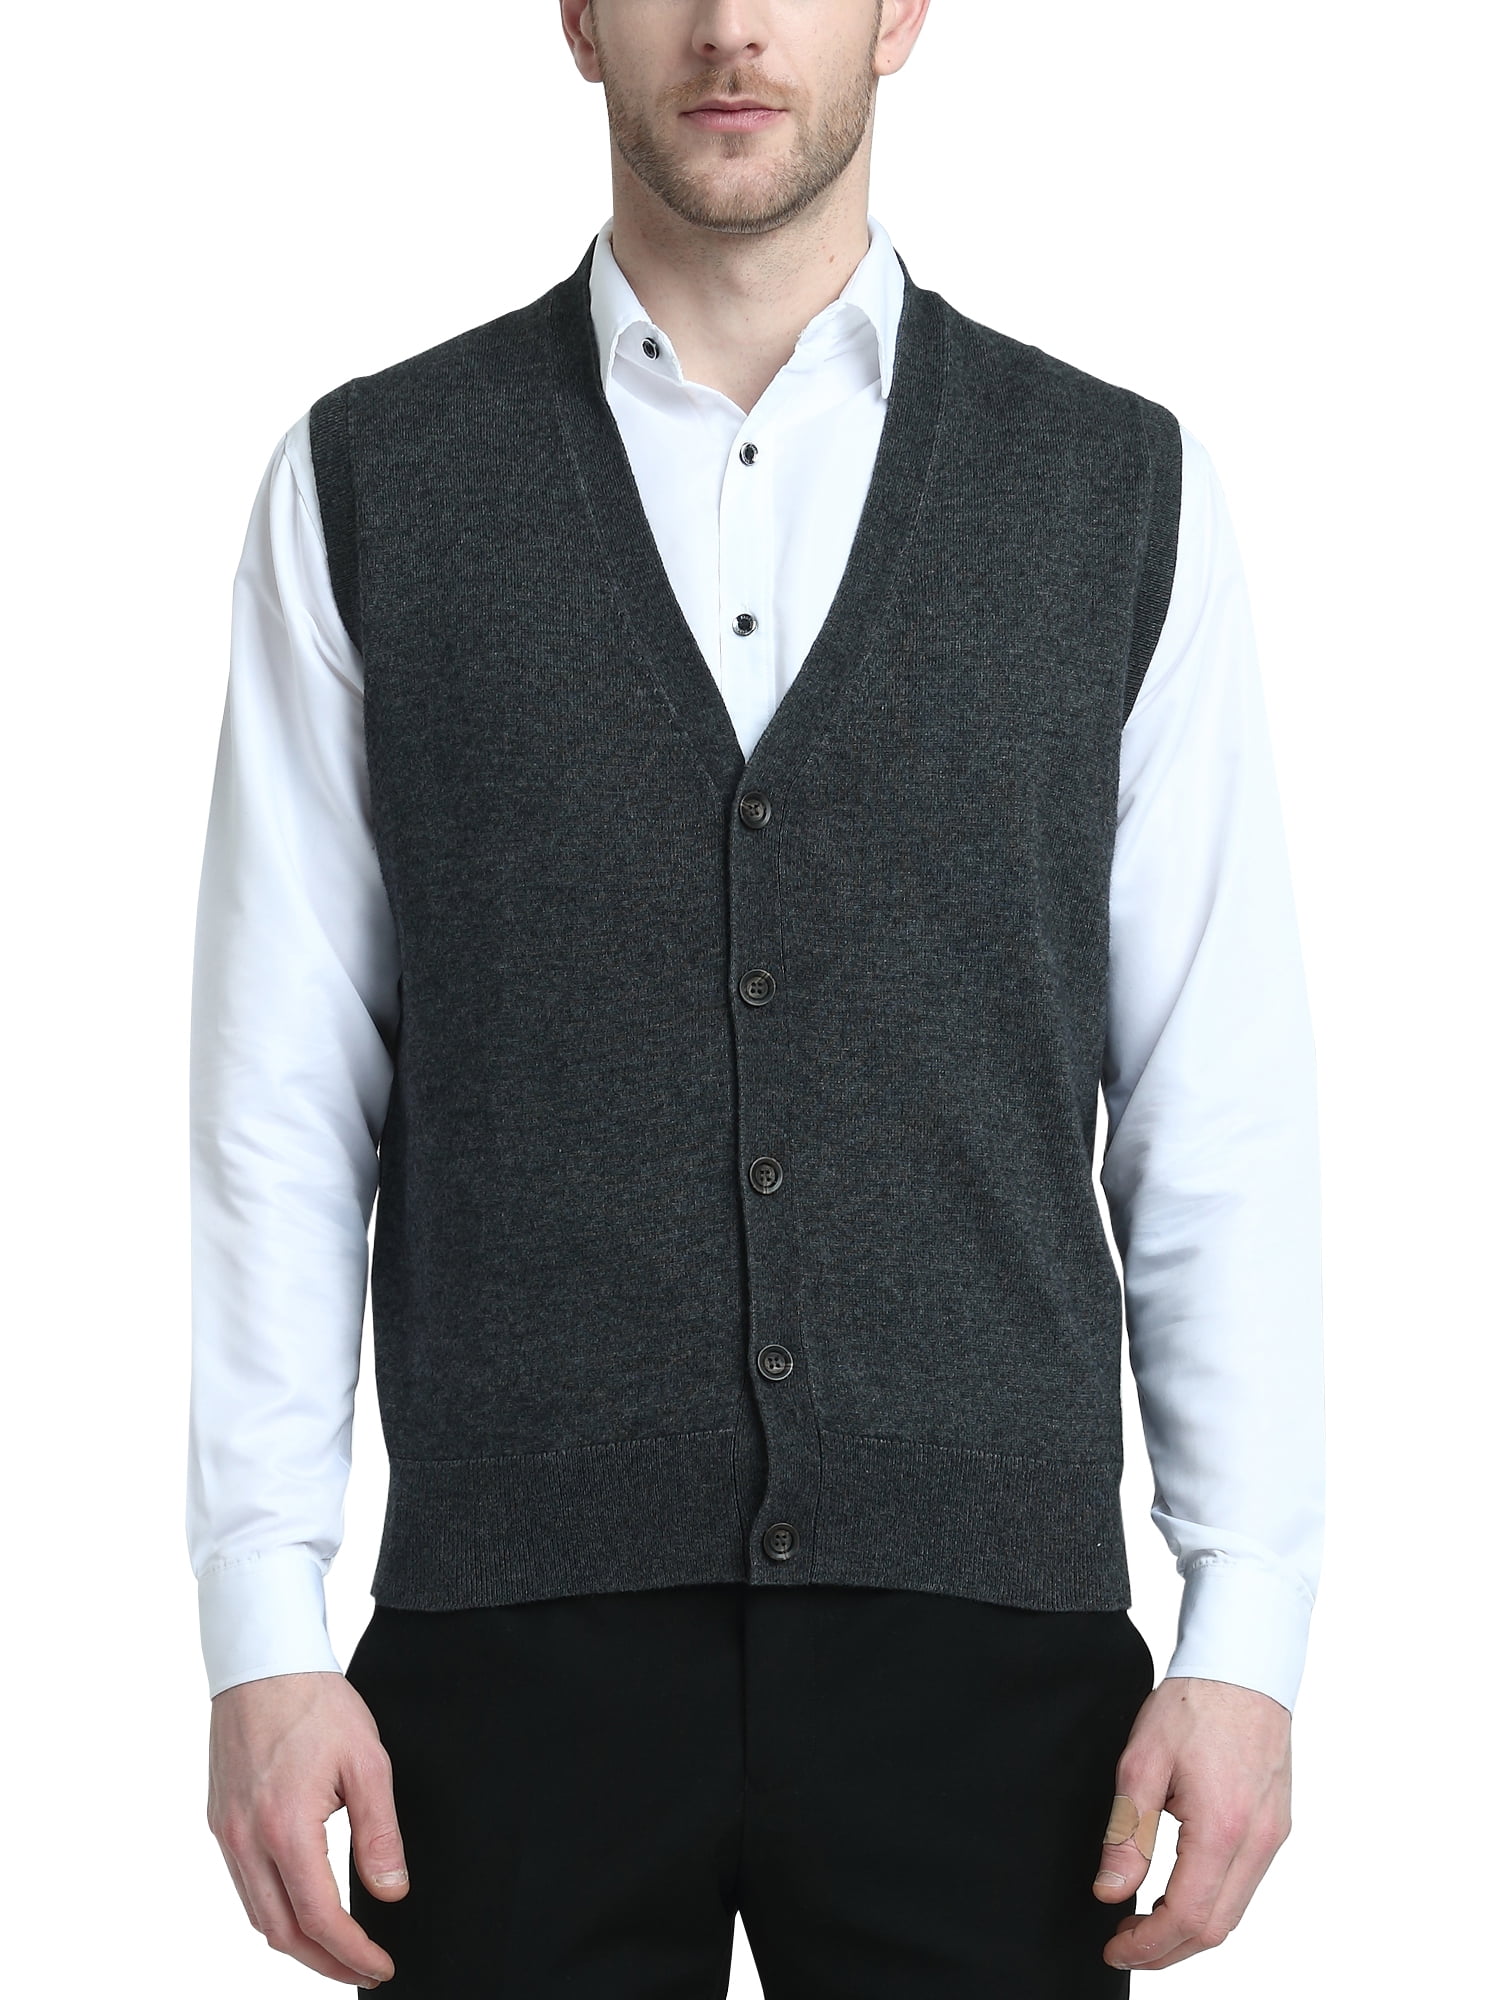 Kallspin Men's Vest Sweater Cashmere Wool Blended V Neck Sleeveless ...